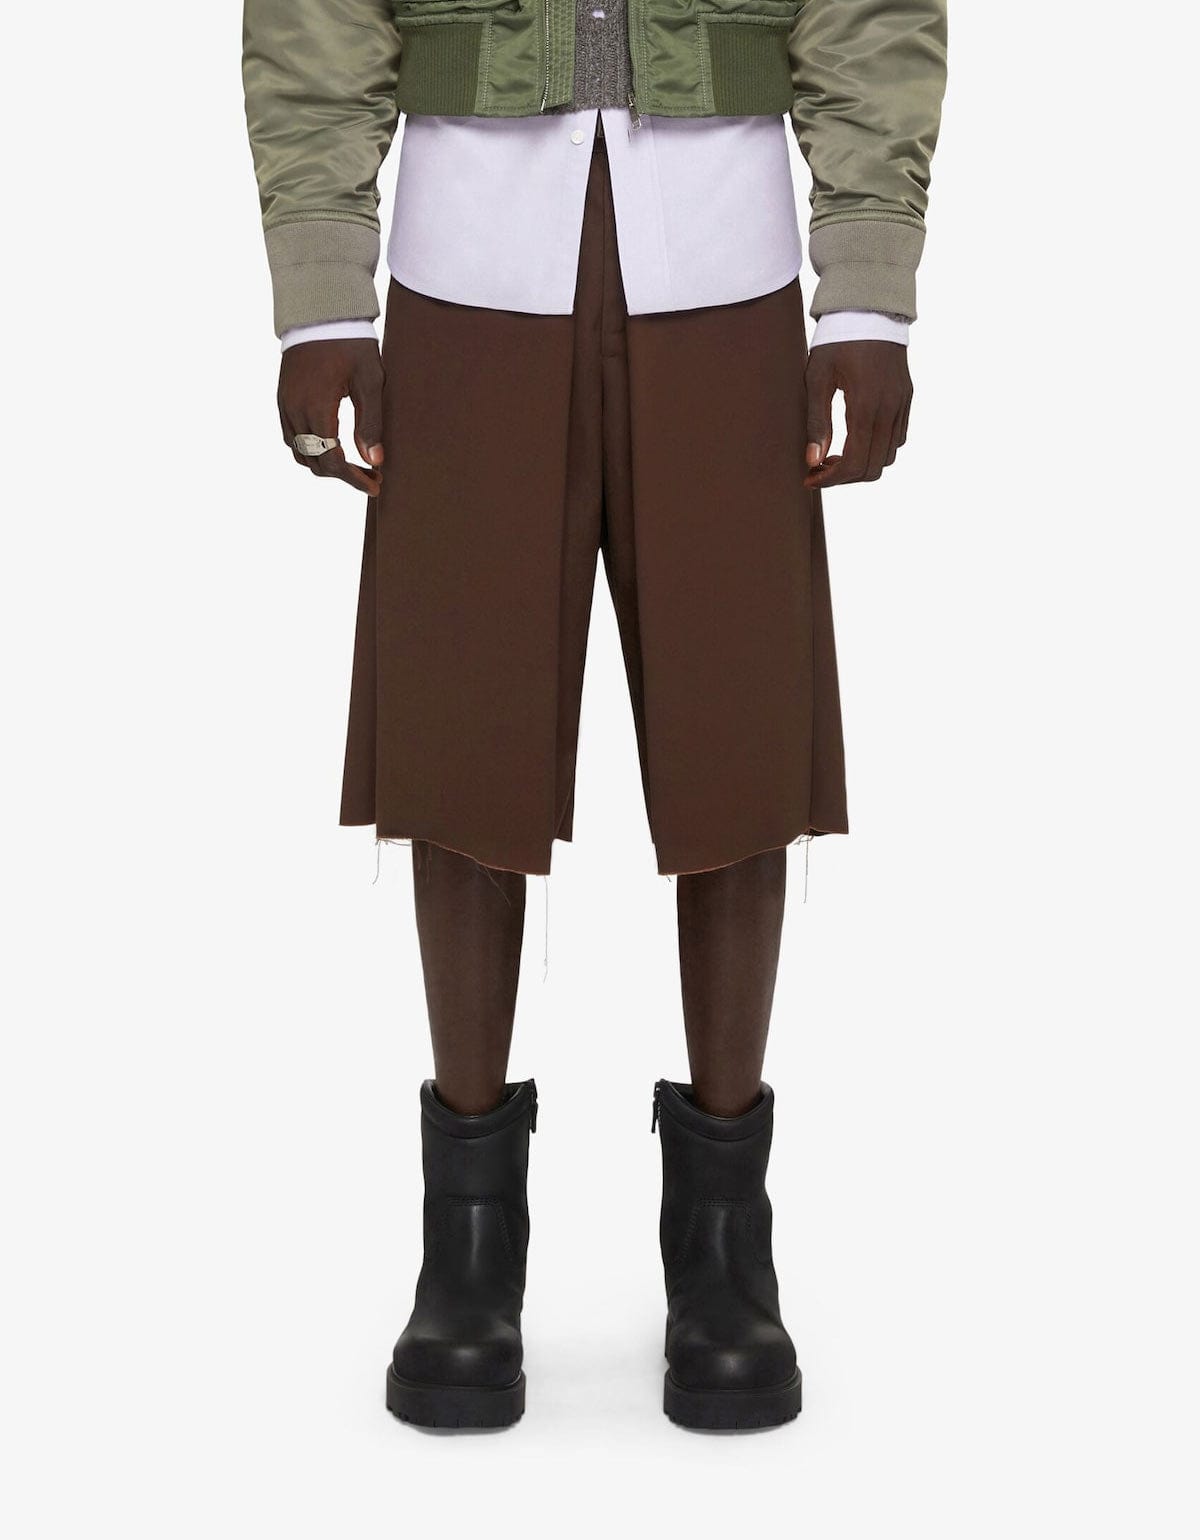 Givenchy Brown Chino Bermuda Shorts